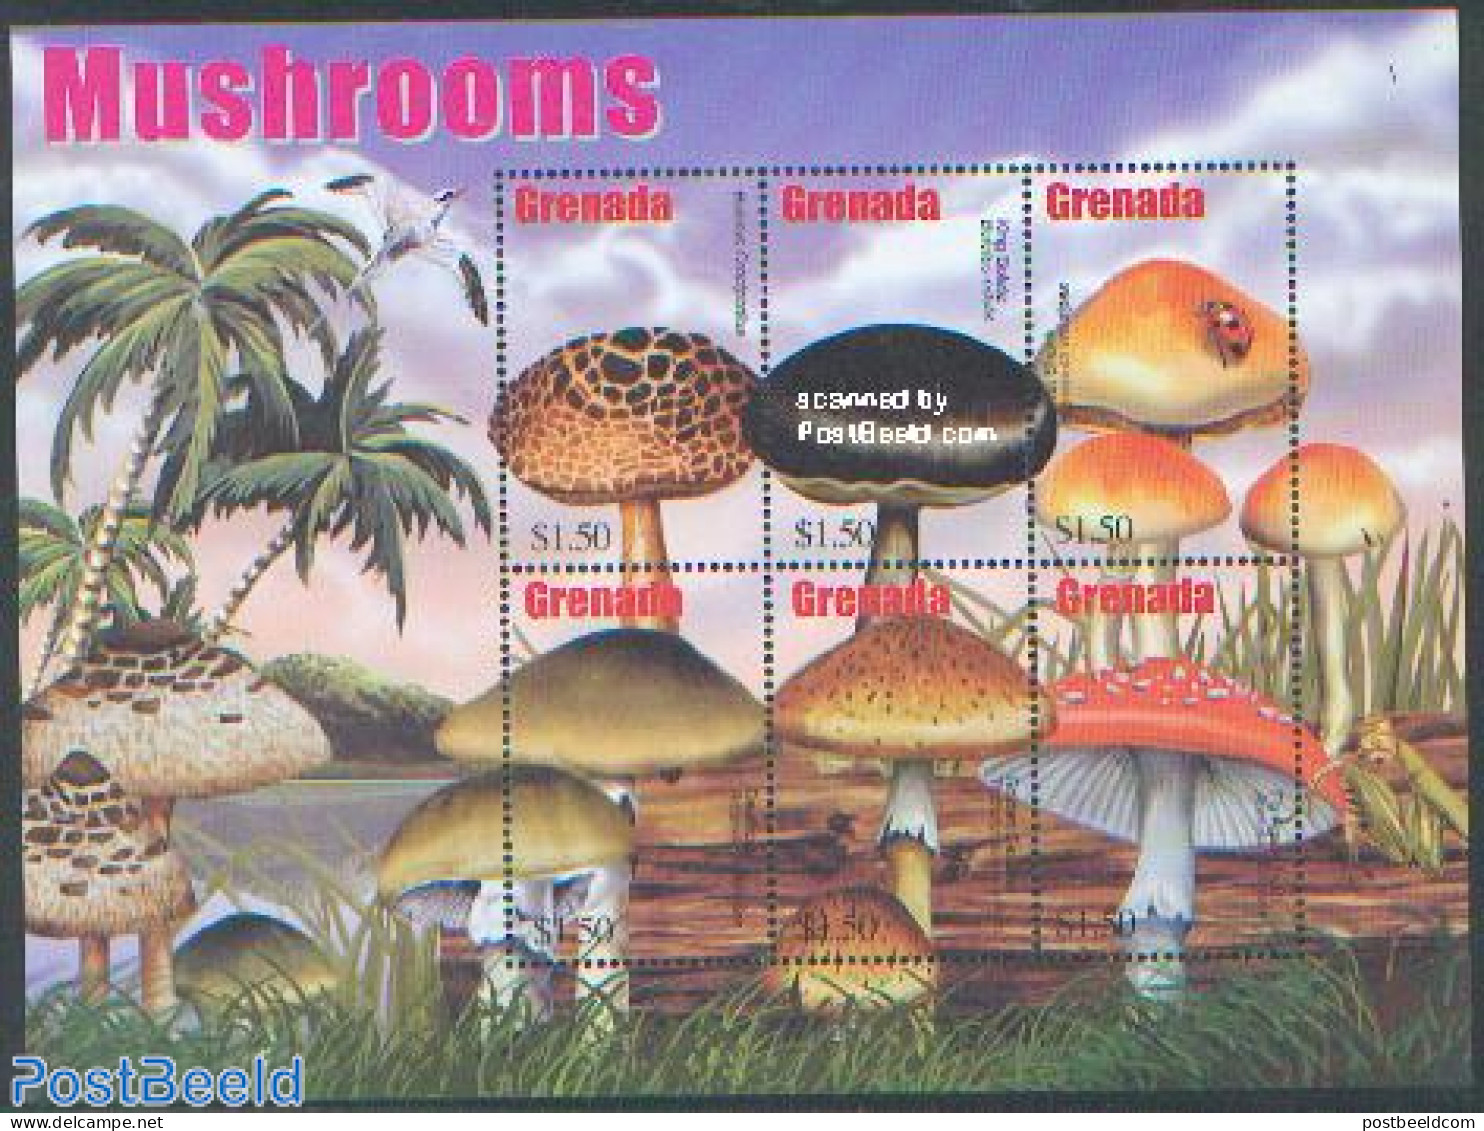 Grenada 2002 Mushrooms 6v M/s /Boletus Crocipodius, Mint NH, Nature - Mushrooms - Pilze